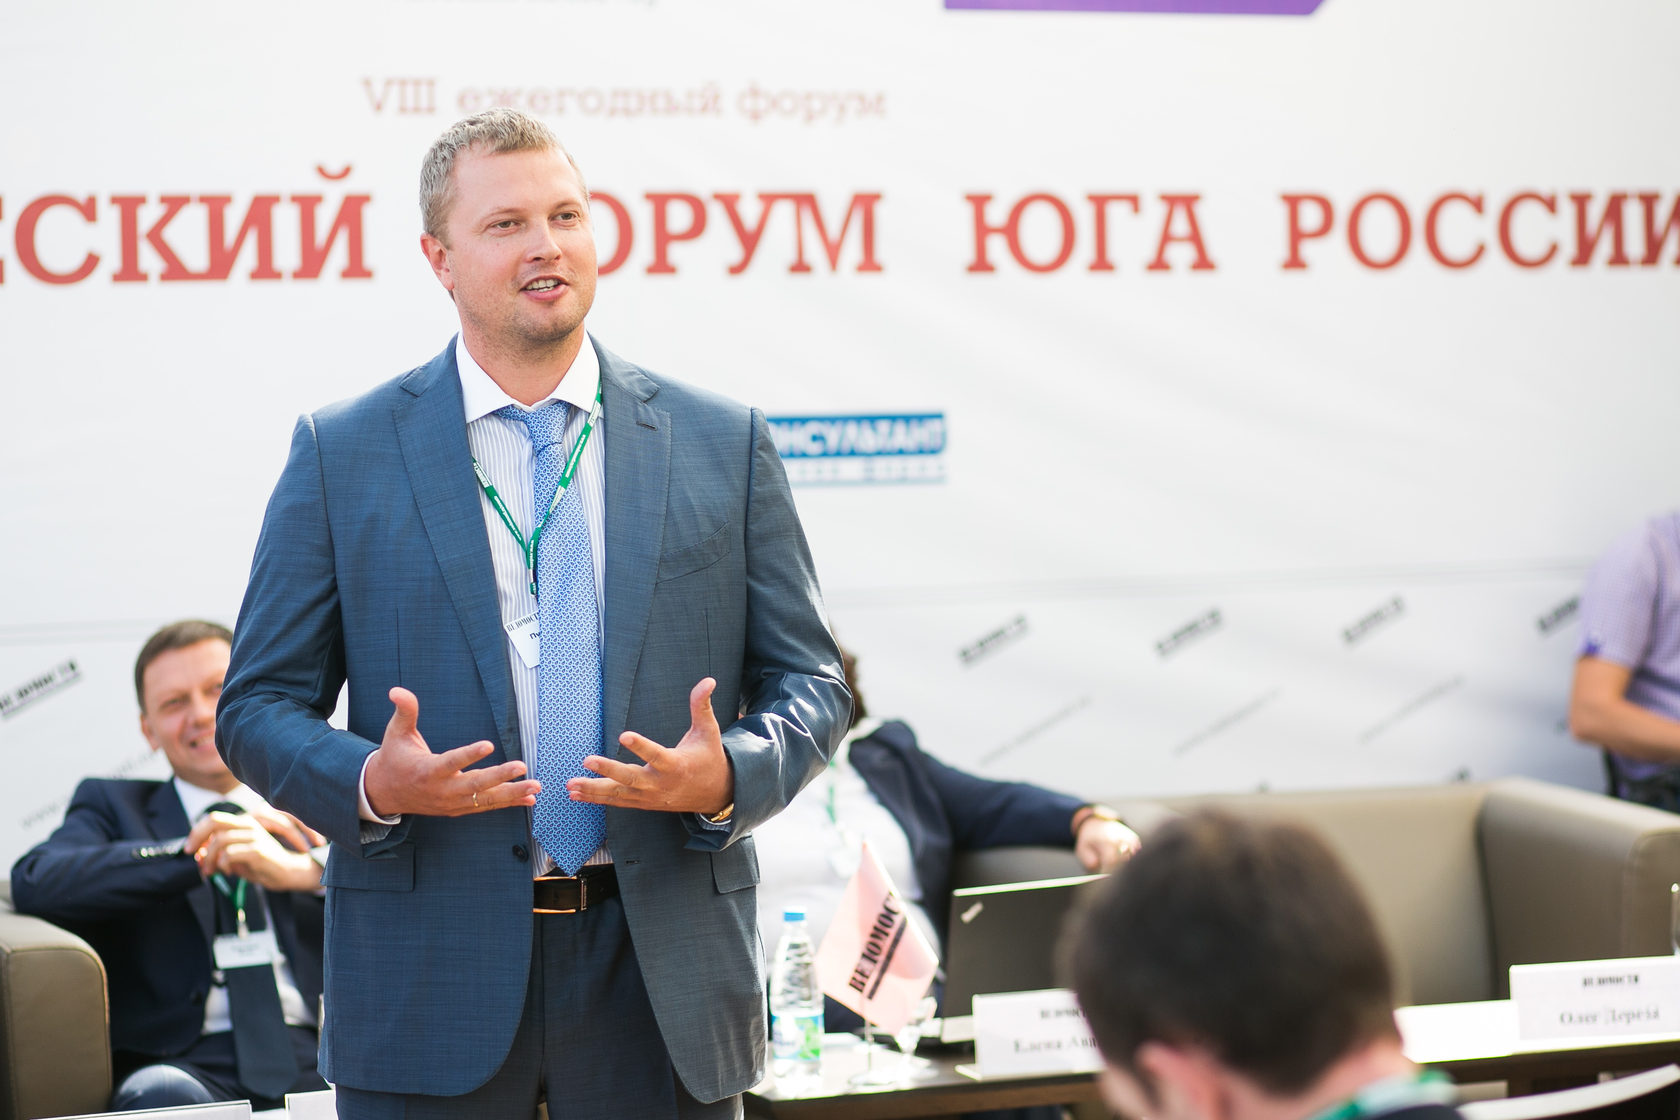 Де­ба­ты, ад­во­кат­ская ре­га­та и гон­ки Фор­му­лы 1: X юби­лей­ный Юри­ди­чес­кий фо­рум юга Рос­сии сос­то­ял­ся в Со­чи